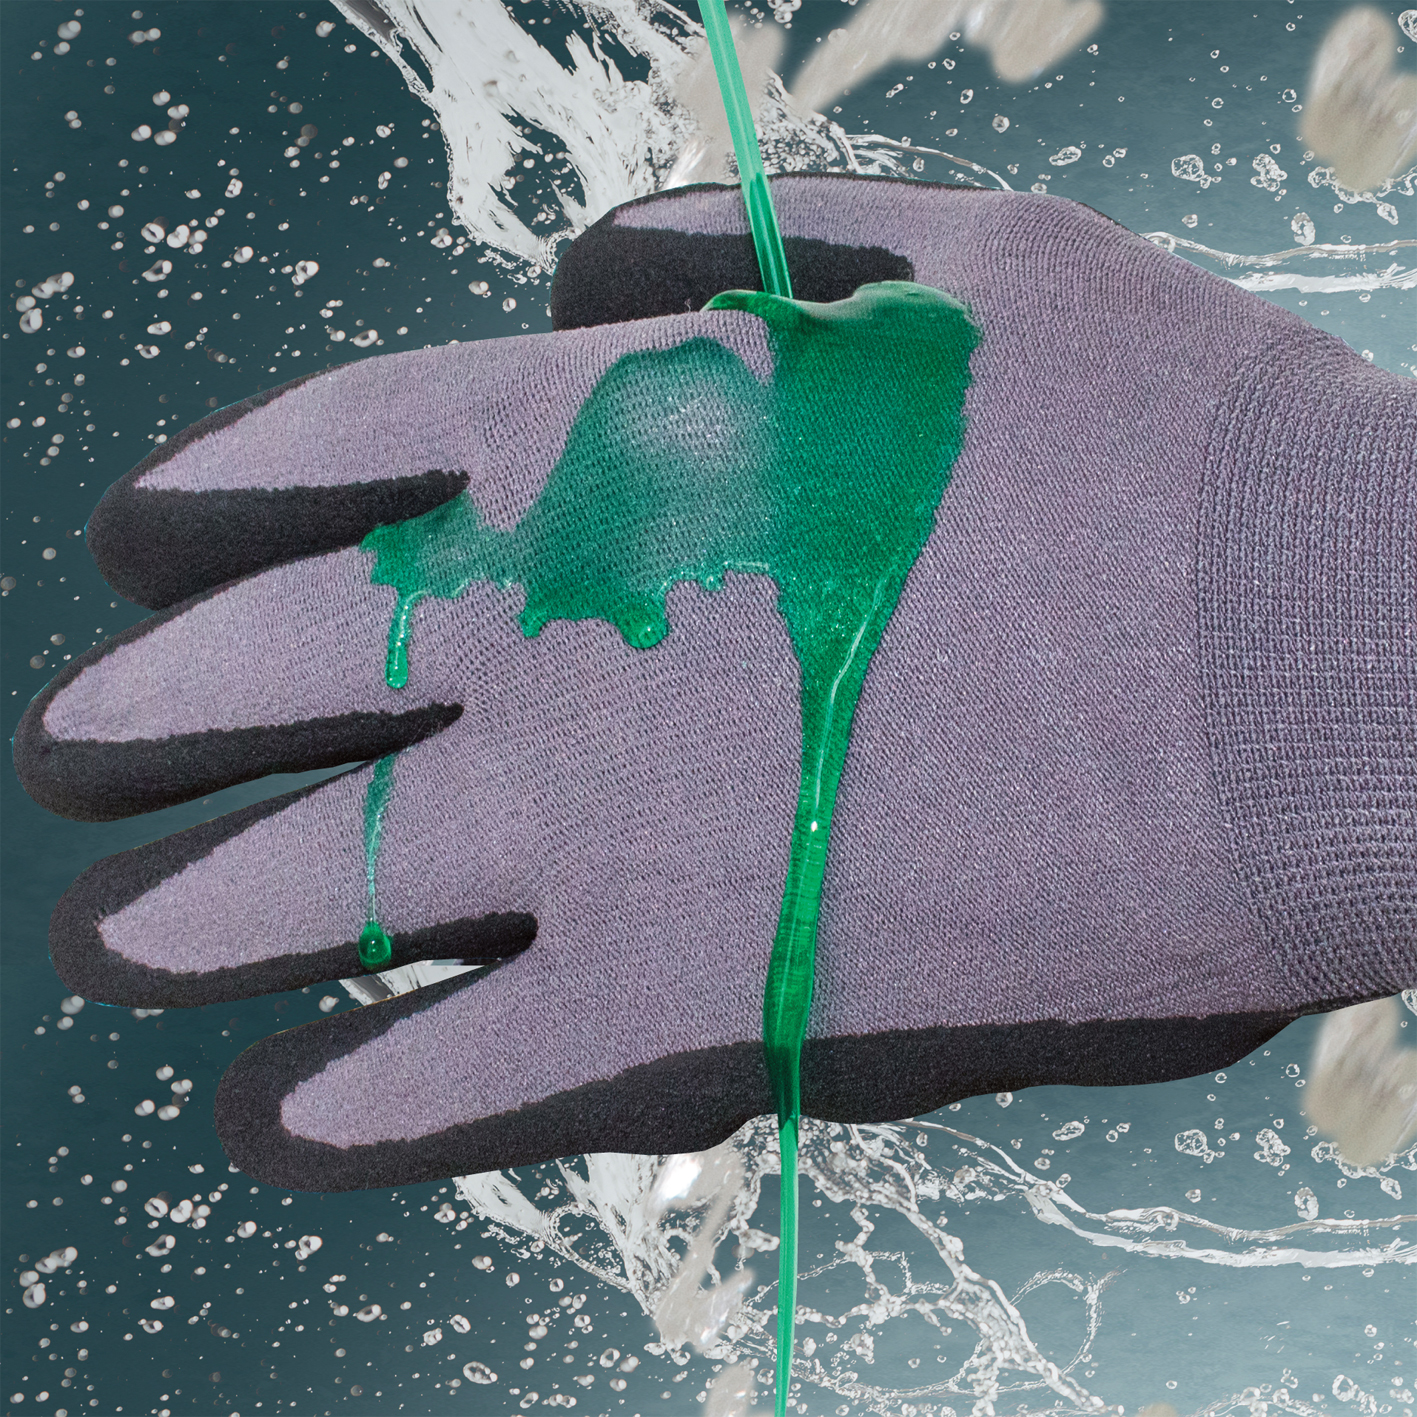 Liquid Resistant Gloves